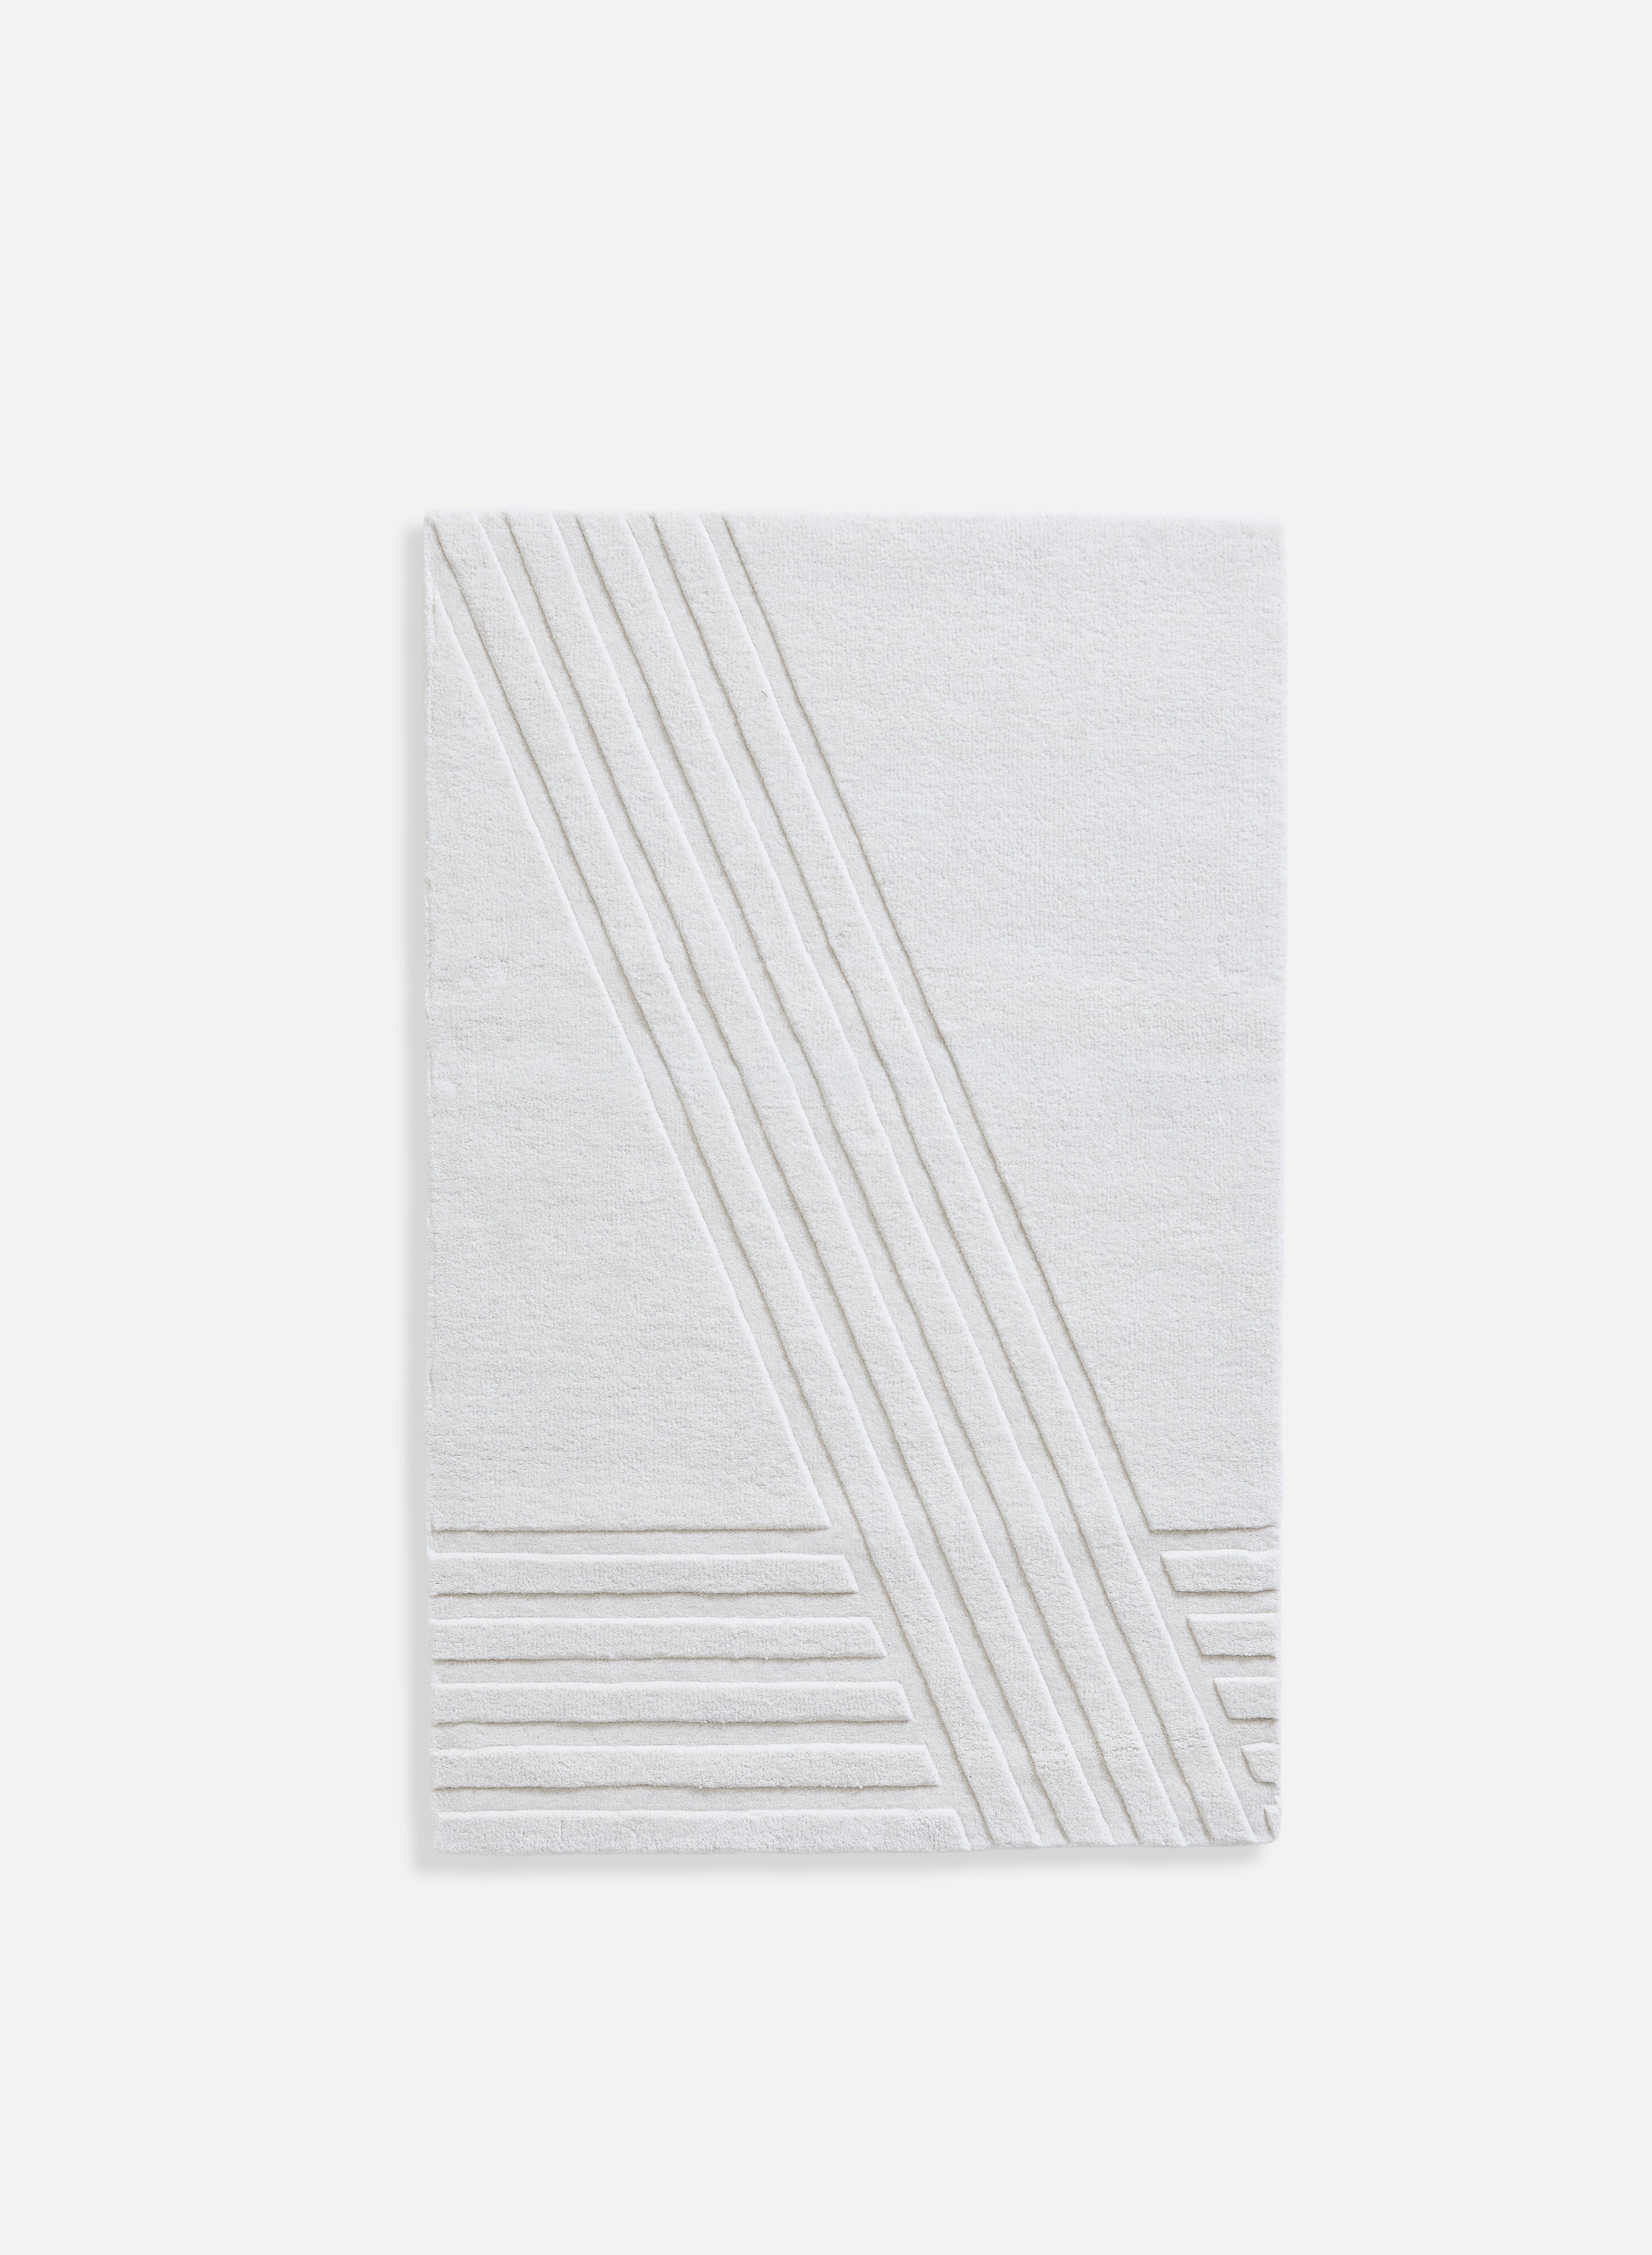 Tapis blanc Kyoto I par AD Miller
Matériaux : 80% laine, 20% coton.
Dimensions : L 90 x L 140 cm
Disponible en gris ou en blanc cassé.

Le tapis en laine tuftée à la main Kyoto s'inspire du motif distinctif des rocailles japonaises traditionnelles.